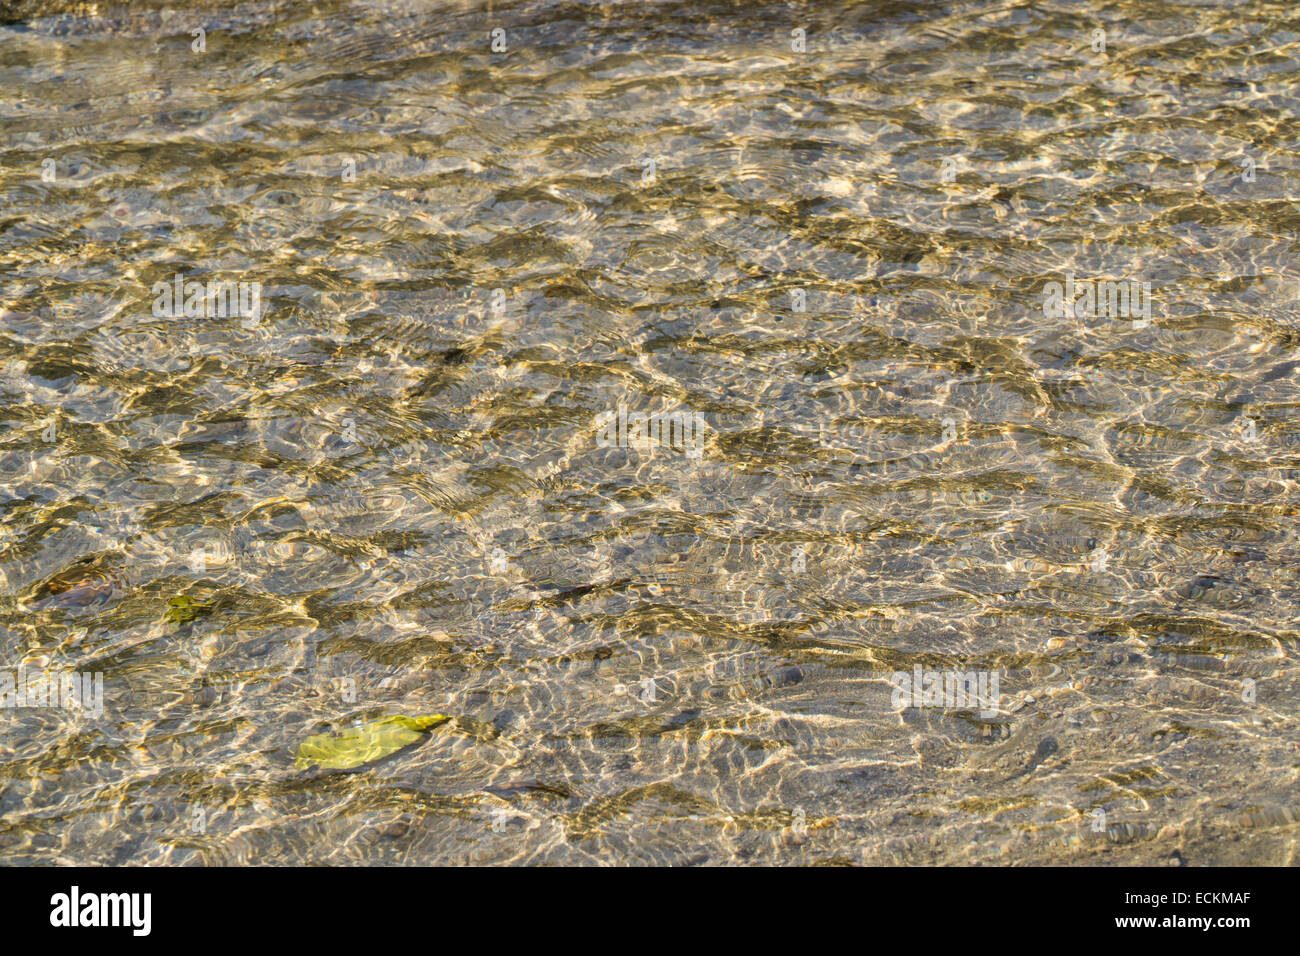 La texture du fond de la rivière jaune, vagues de sable en eau peu profonde Banque D'Images